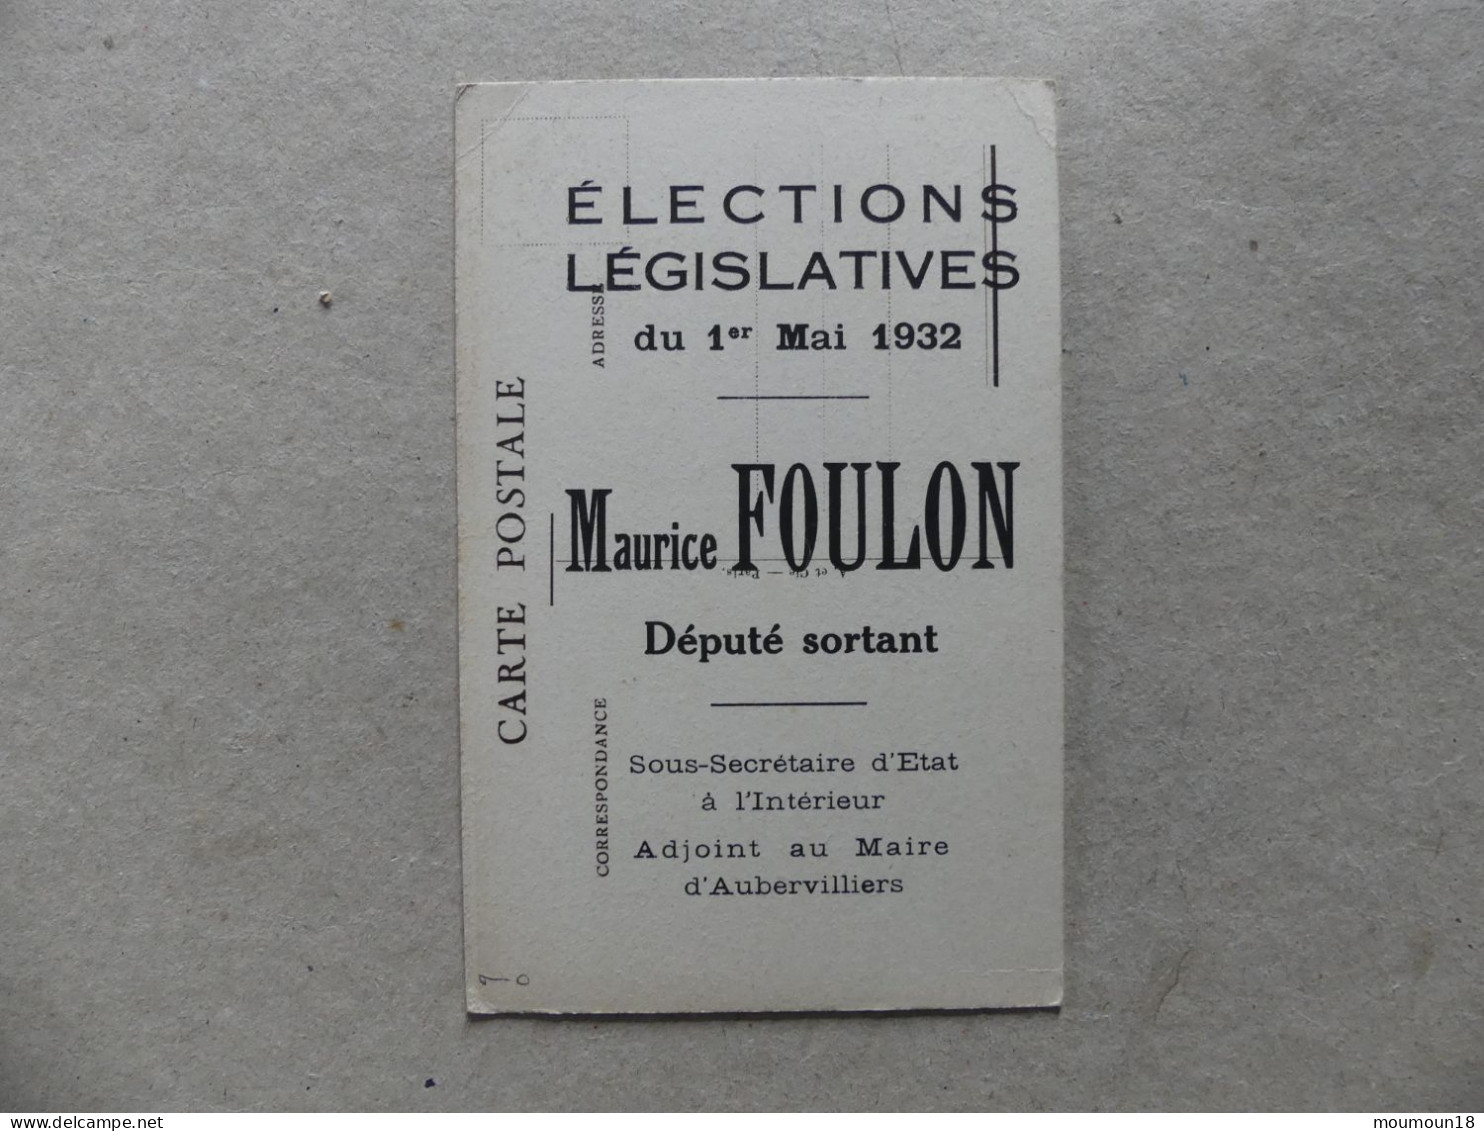 Maurice Foulon Elections Législatives 1932 Député Sortant Sous-Secrétaire D'Etat Intérieur Adjoint Maire Aubervilliers - Hombres Políticos Y Militares